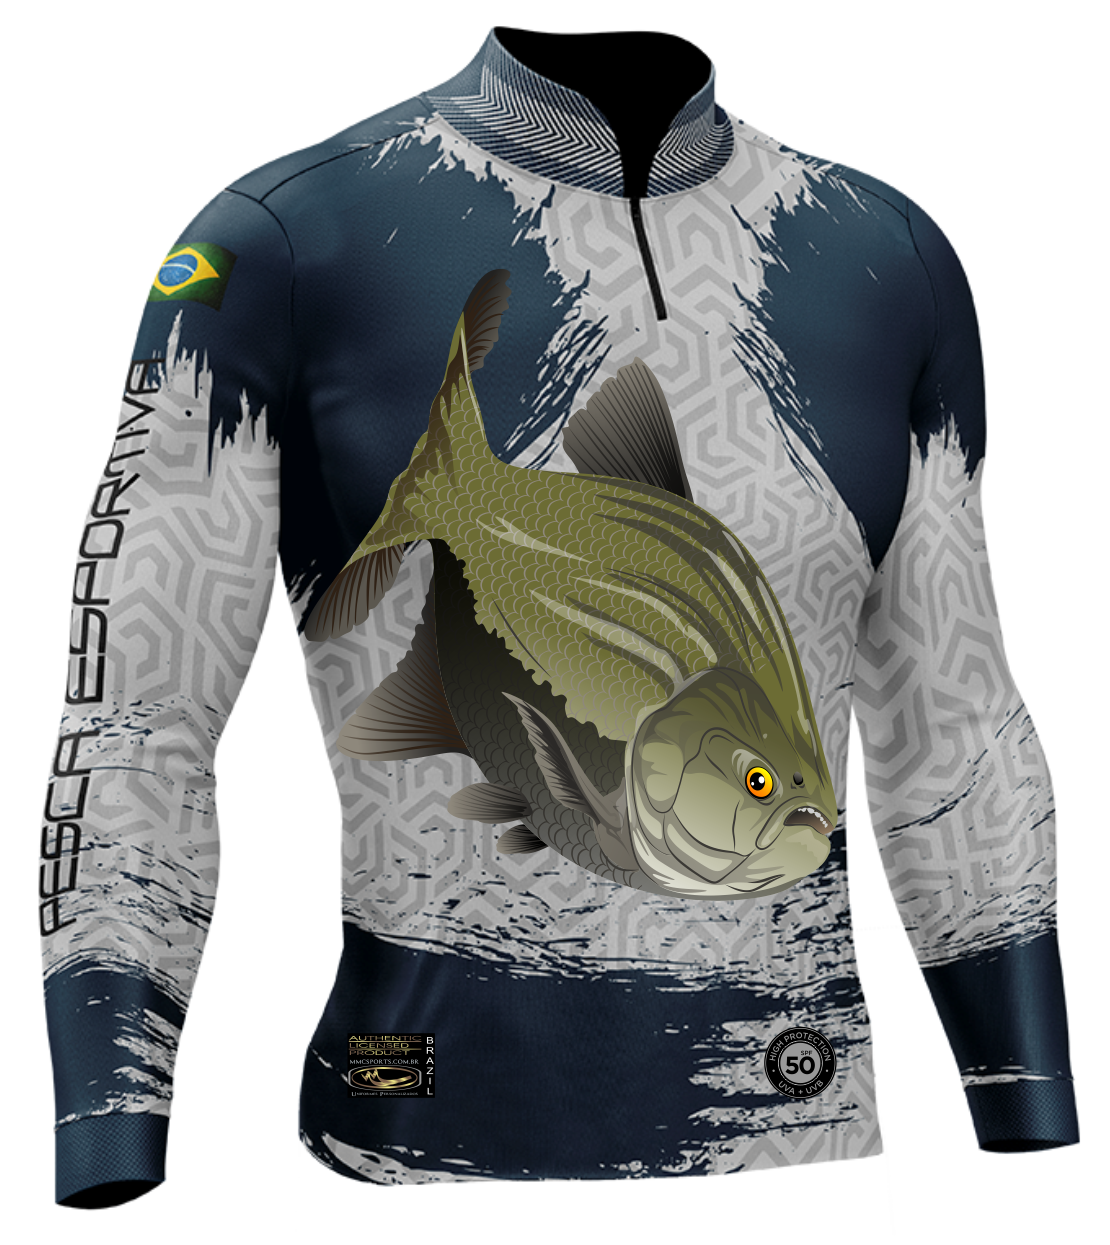  ChipteeAmz Camisas de pesca de camuflaje de pesca de